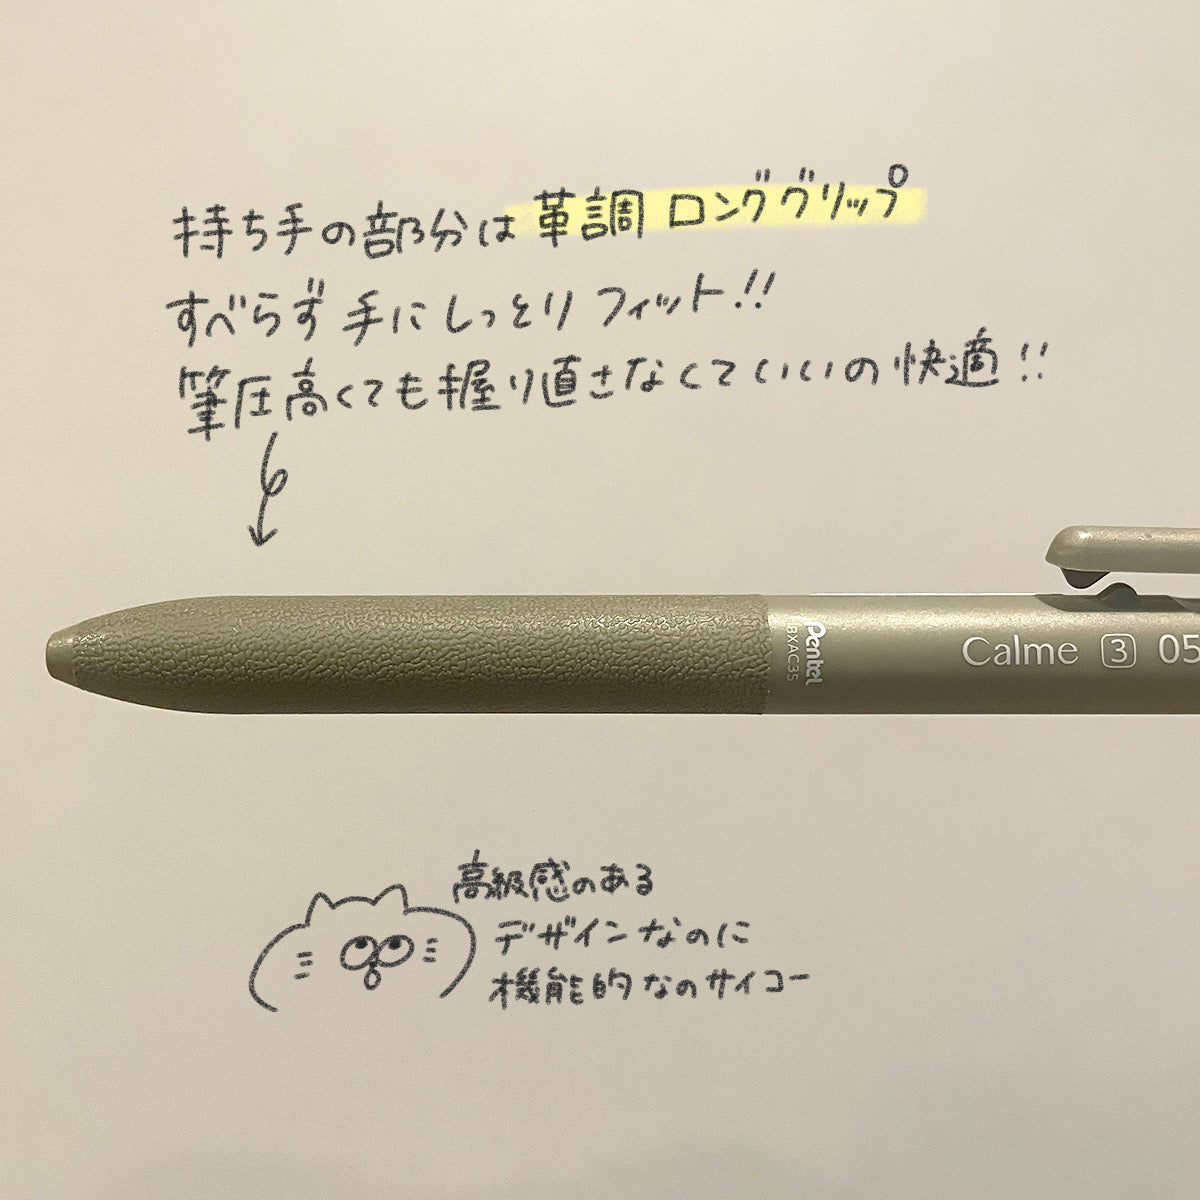 calme 3色ボールペン 0.5mm